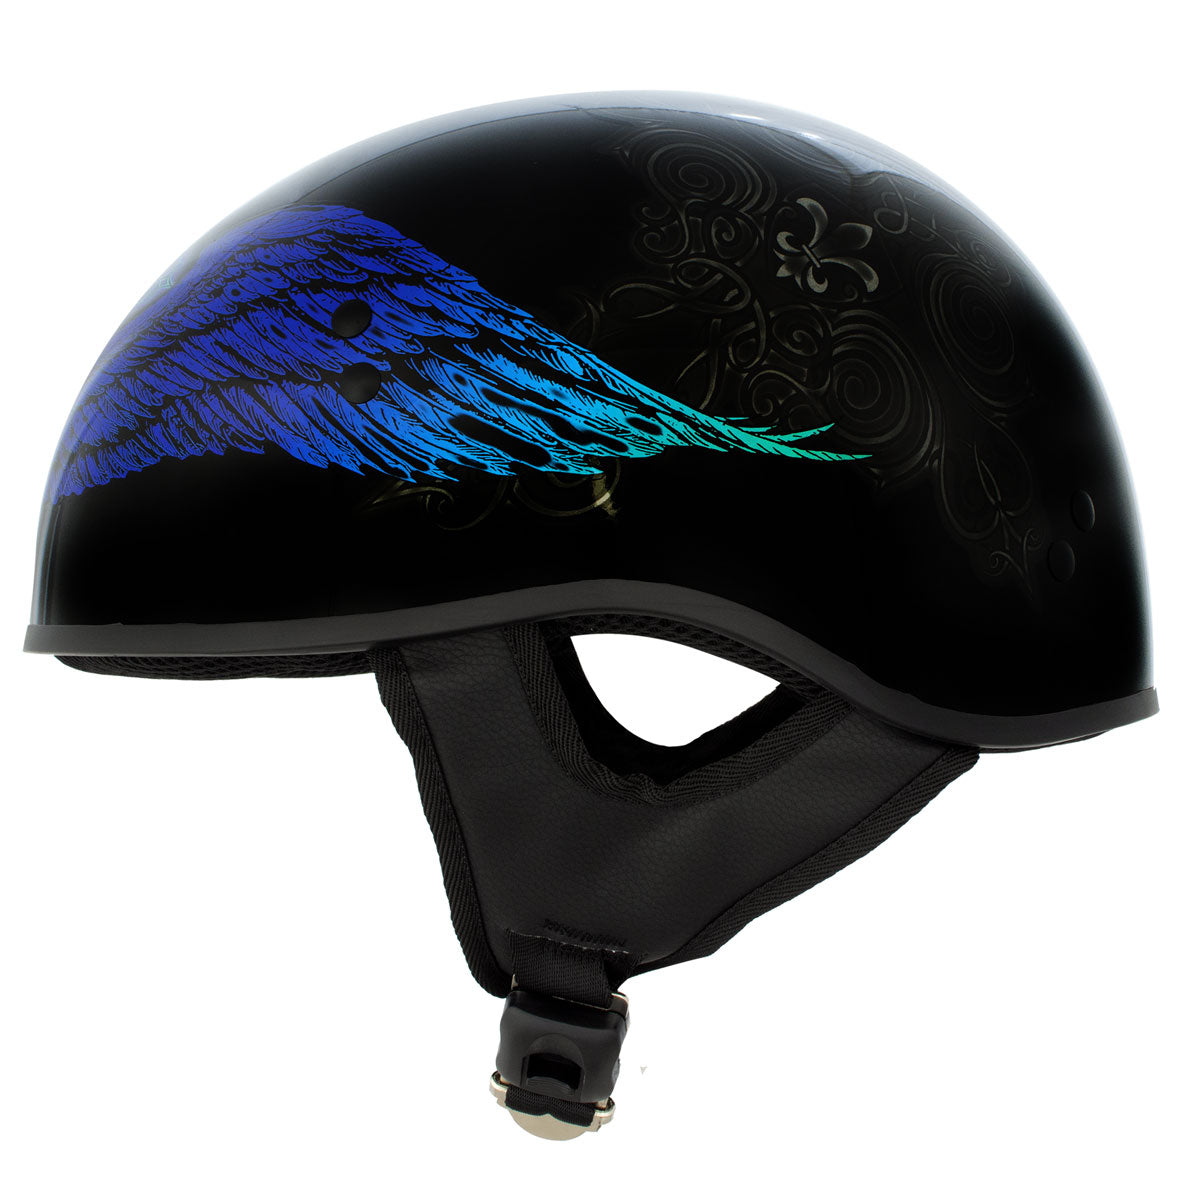 Hot Leathers HLD1045 Gloss Black 'Cross De Lis' Advanced DOT Skull Helmet